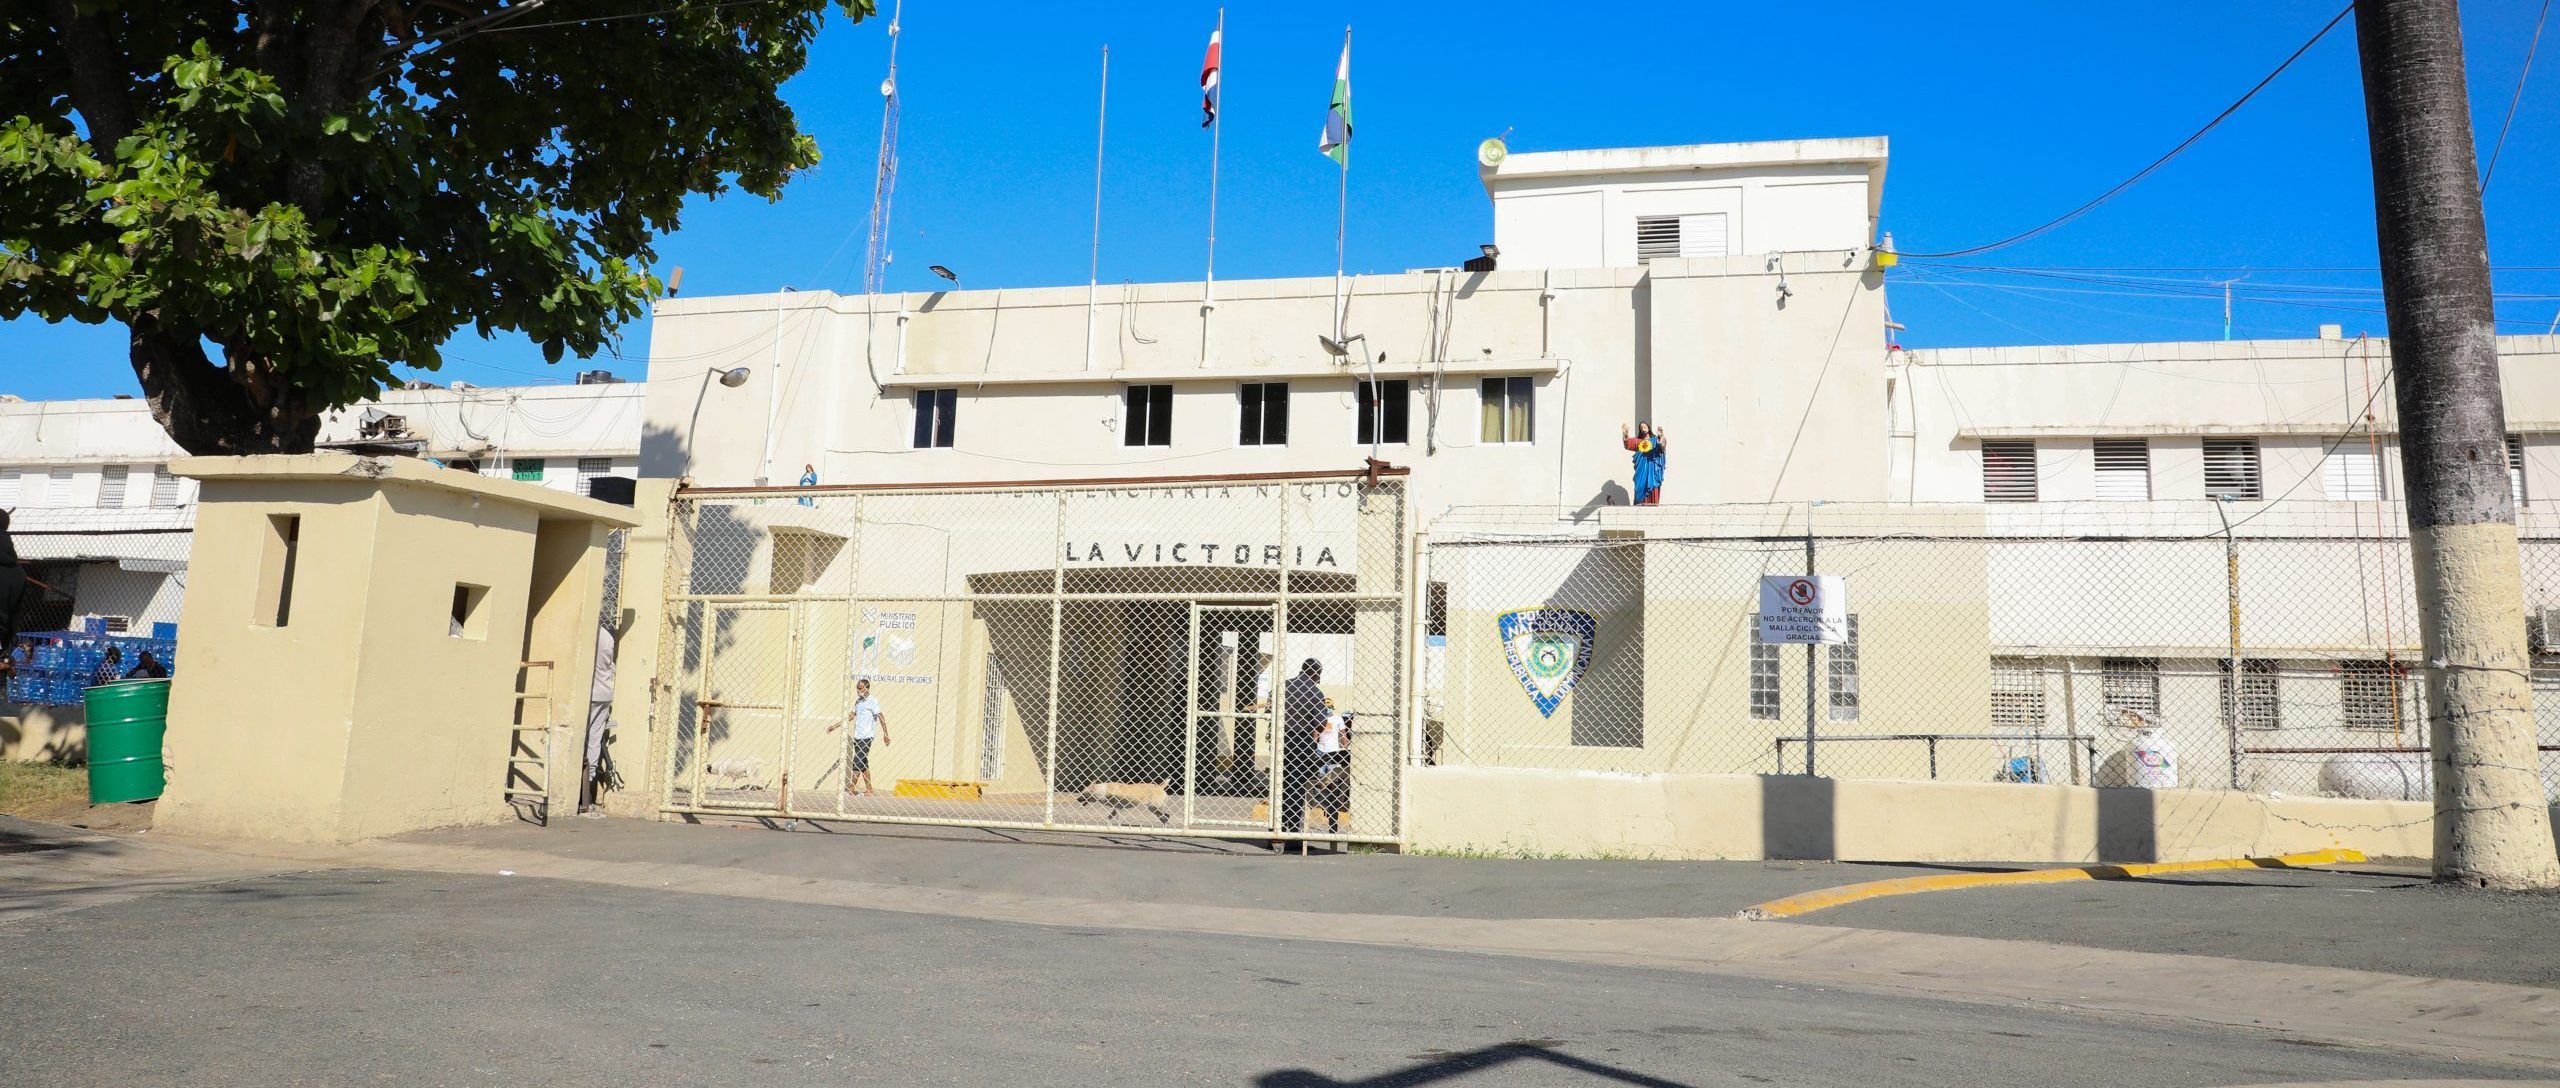 Autoridades lamentan fallecimiento de tres privados de libertad durante una trifulca ocurrida en la Penitenciaría de La Victoria